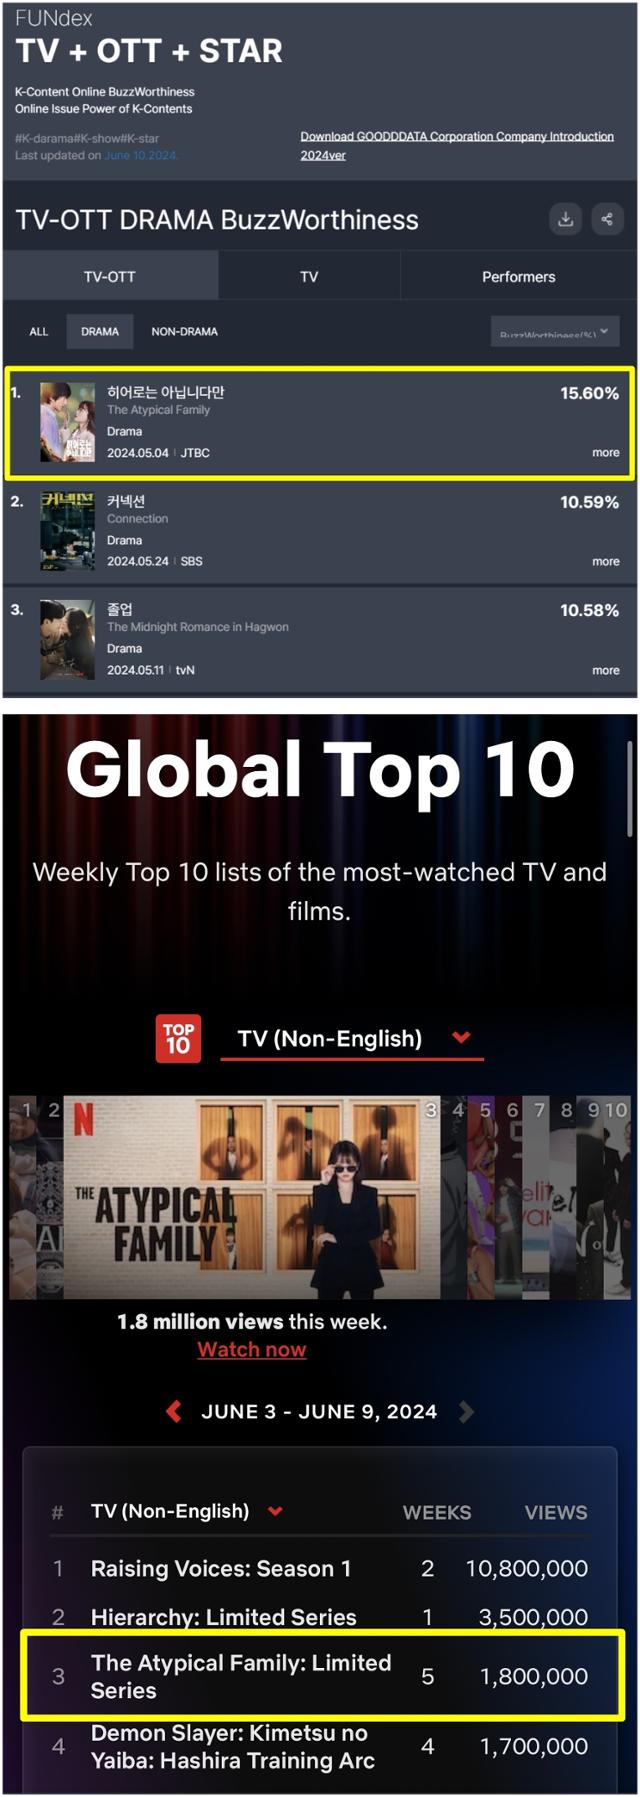 '히어로는 아닙니다만'은 굿데이터코퍼레이션이 발표한 6월 1주 차 TV-OTT 드라마 화제성 1위에 올랐고, 넷플릭스의 비영어권 TV 부문에서 3위에 올랐다.